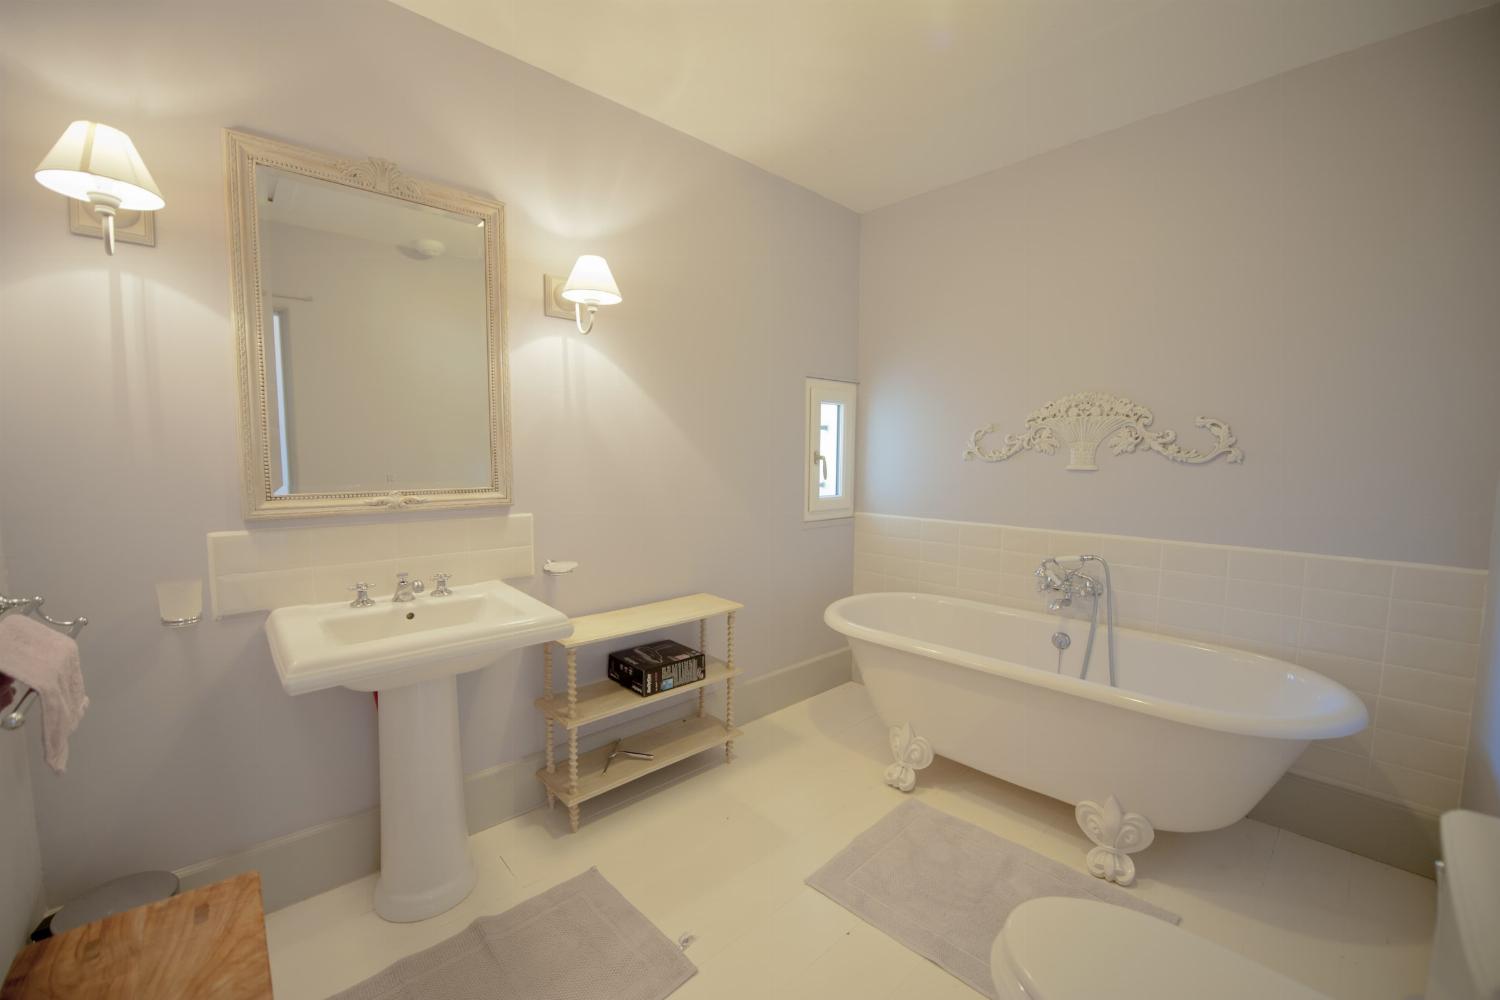 Salle de bain | Location maison dans le Lot-et-Garonne